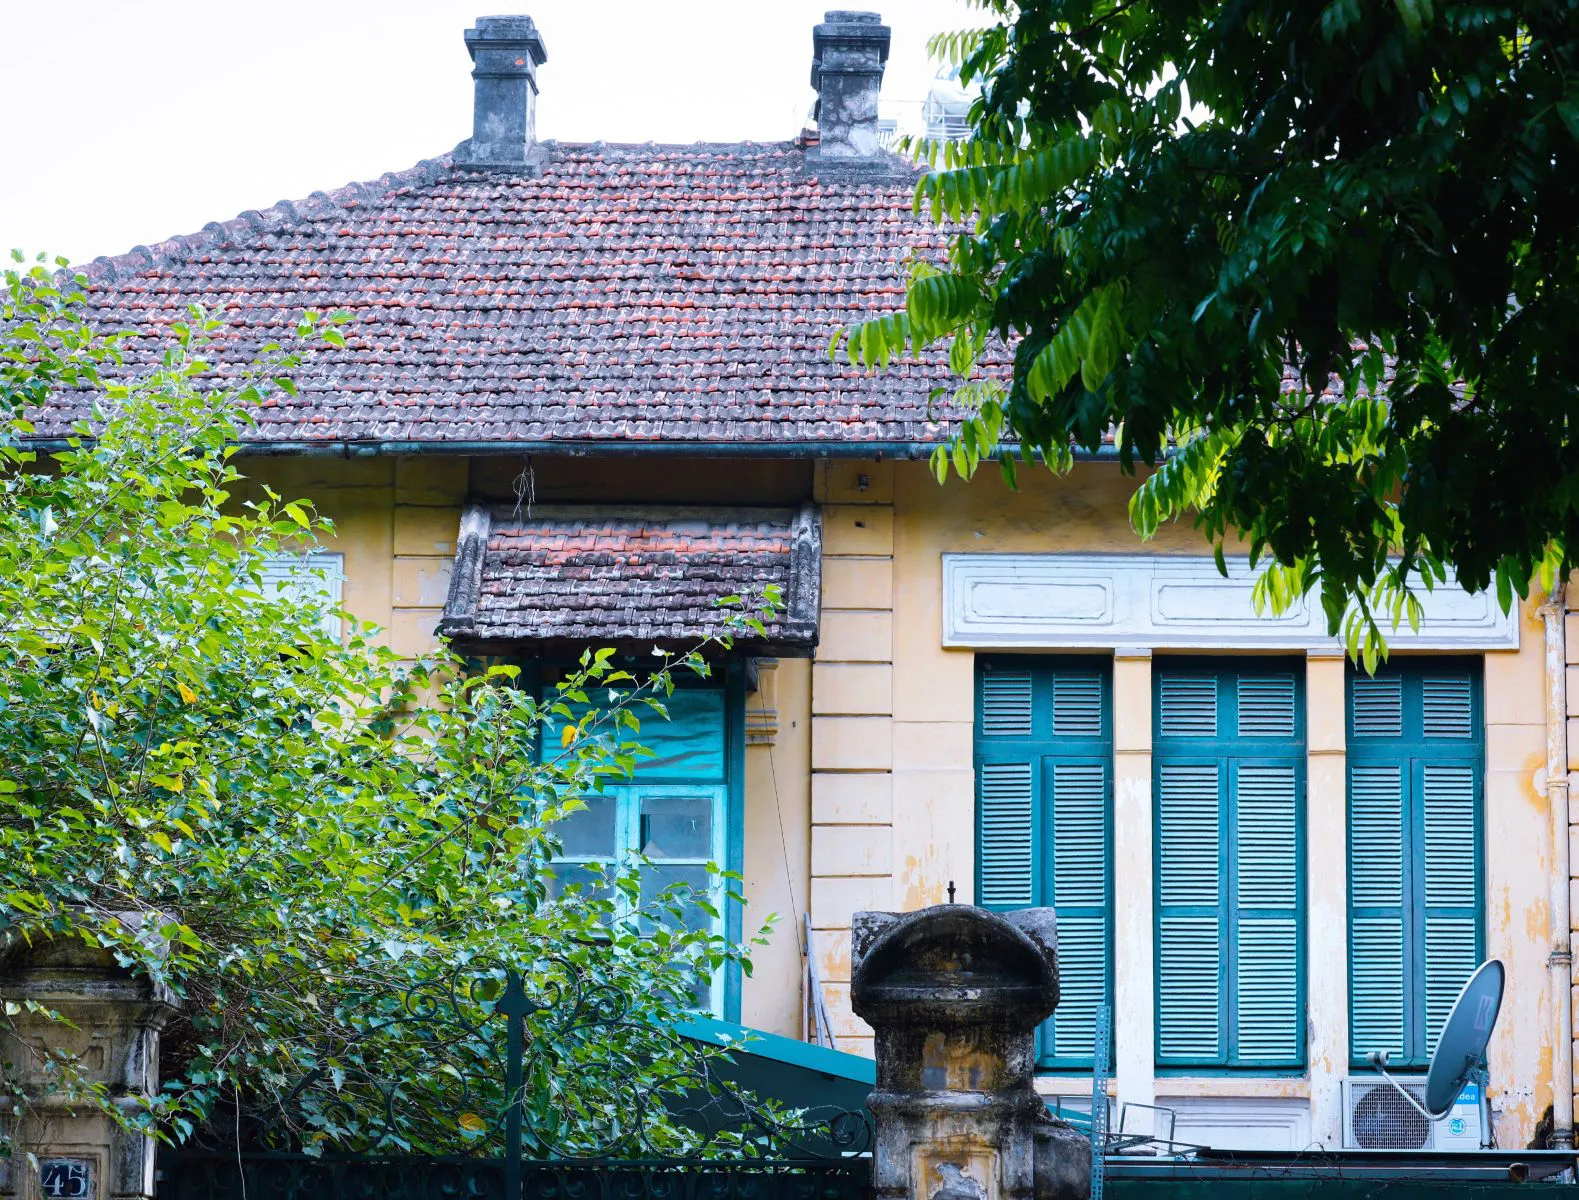 Là một phố lớn có từ thời Pháp, Trần Phú có nhiều biệt thự Pháp vào loại đẹp nhất Hà Nội và biệt thự có số 45 còn đó những mái ngói thâm nâu, phảng phất những nét cổ điển của châu Âu.